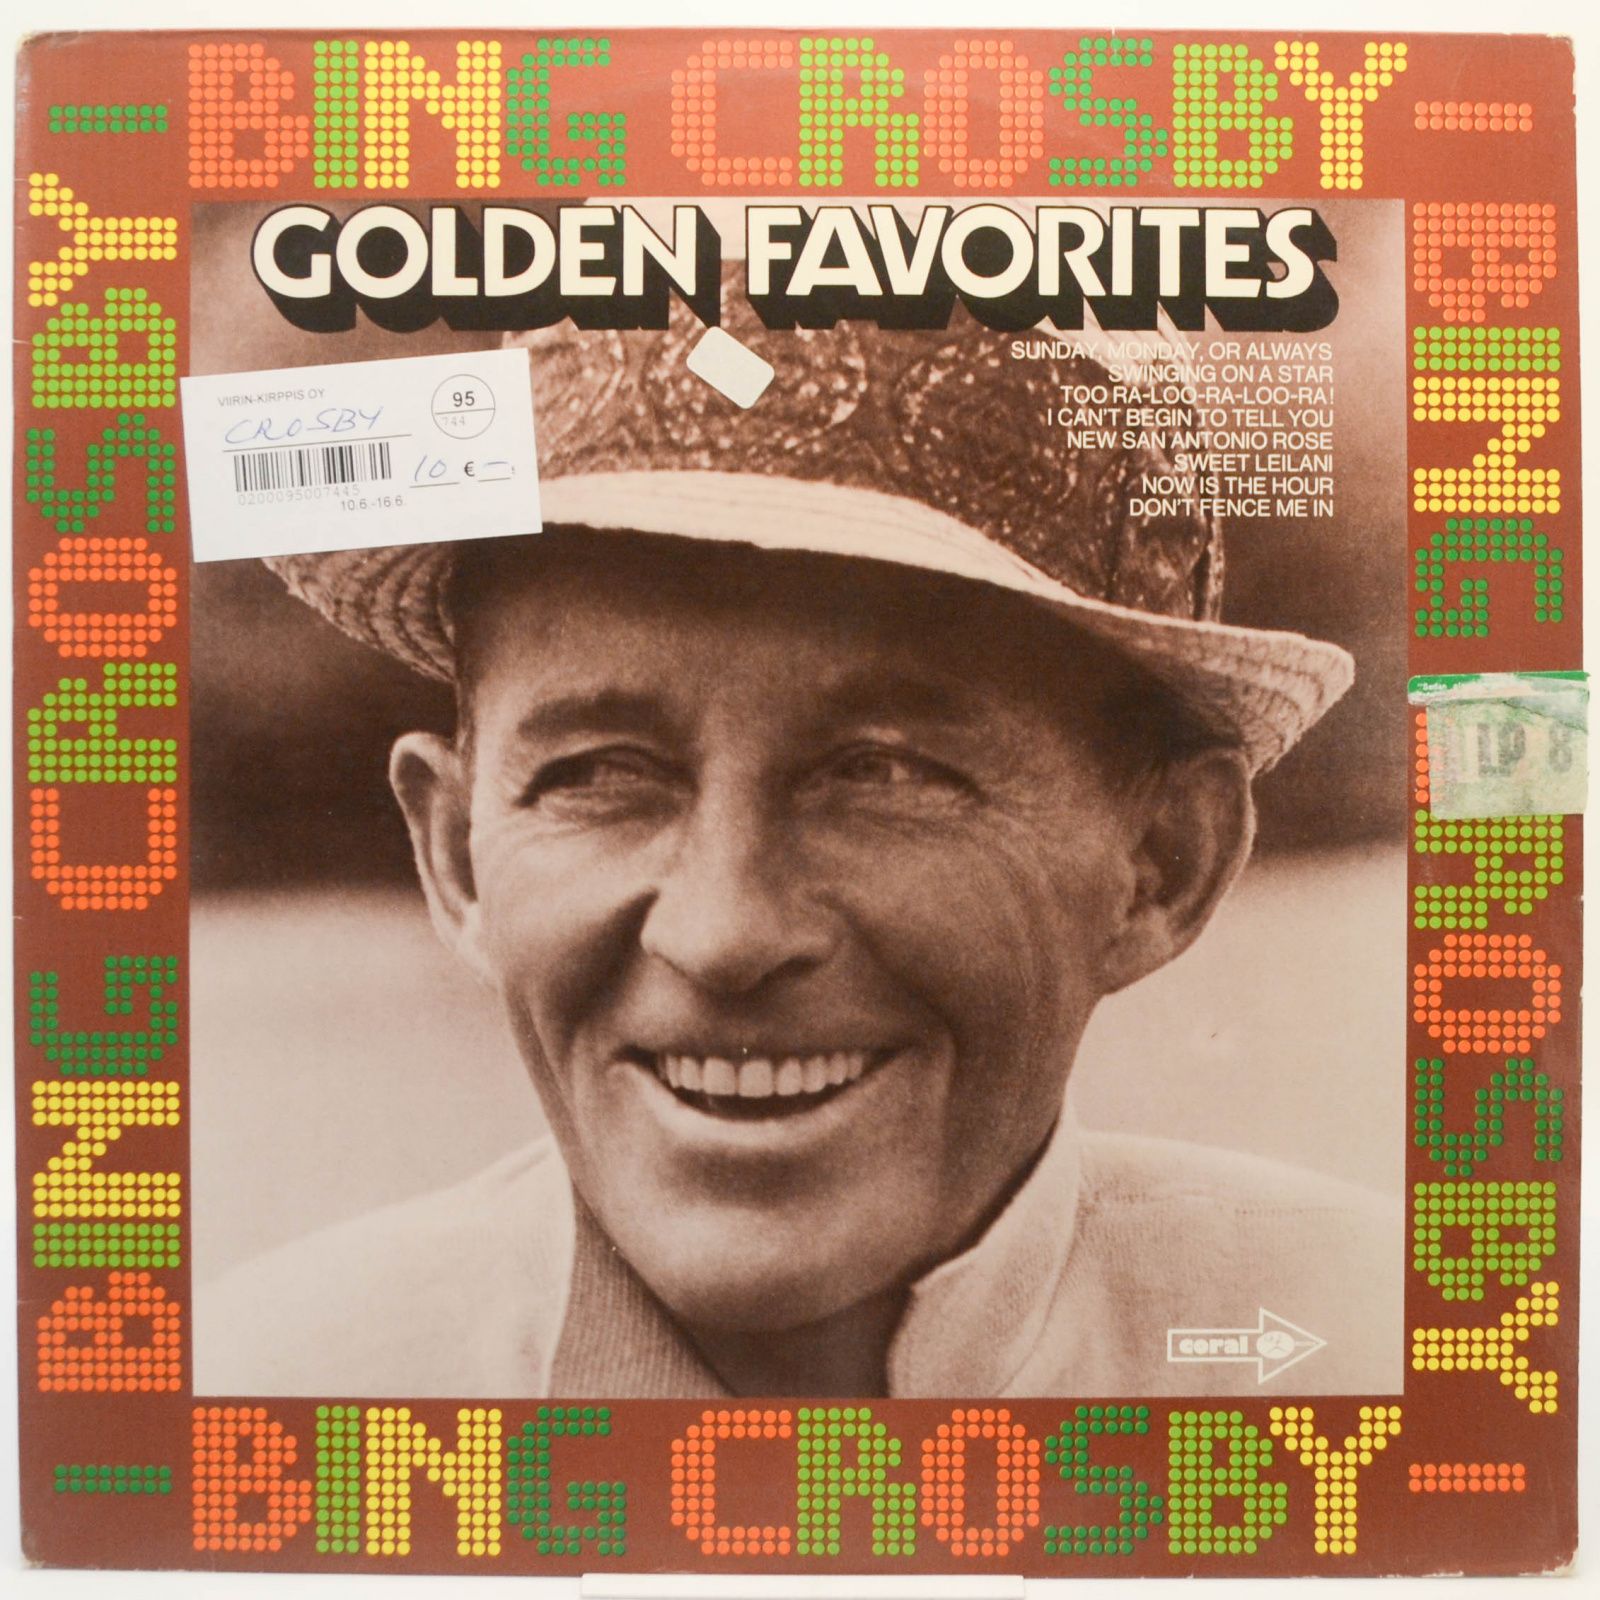 Bing Crosby — Golden Favorites, 1977